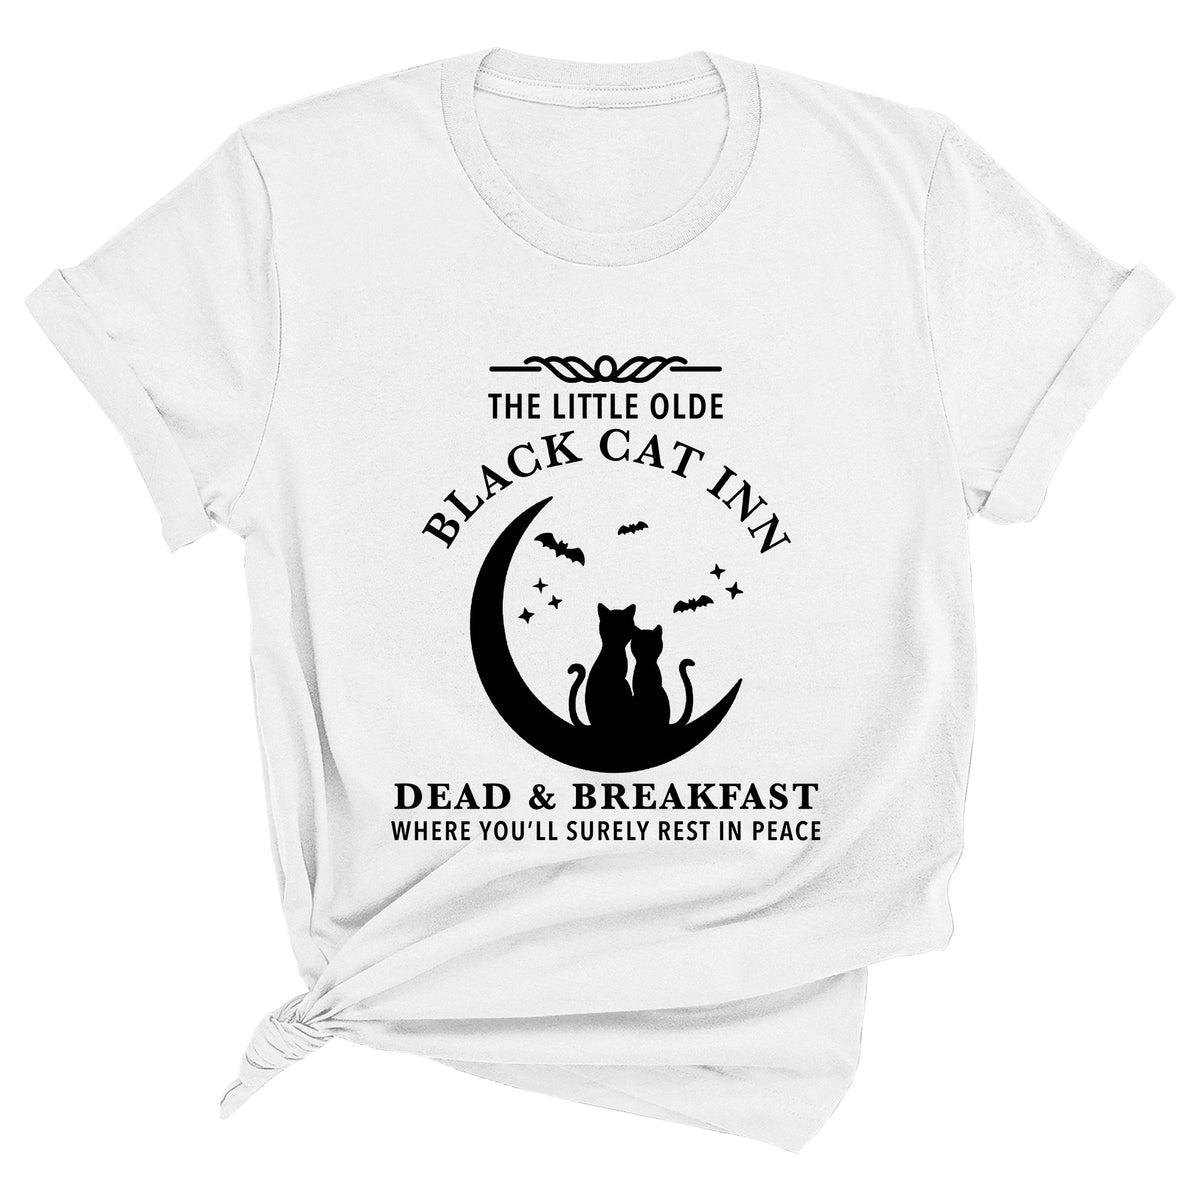 The Little Old Black Cat Inn Dead & Breakfast Unisex T-Shirt